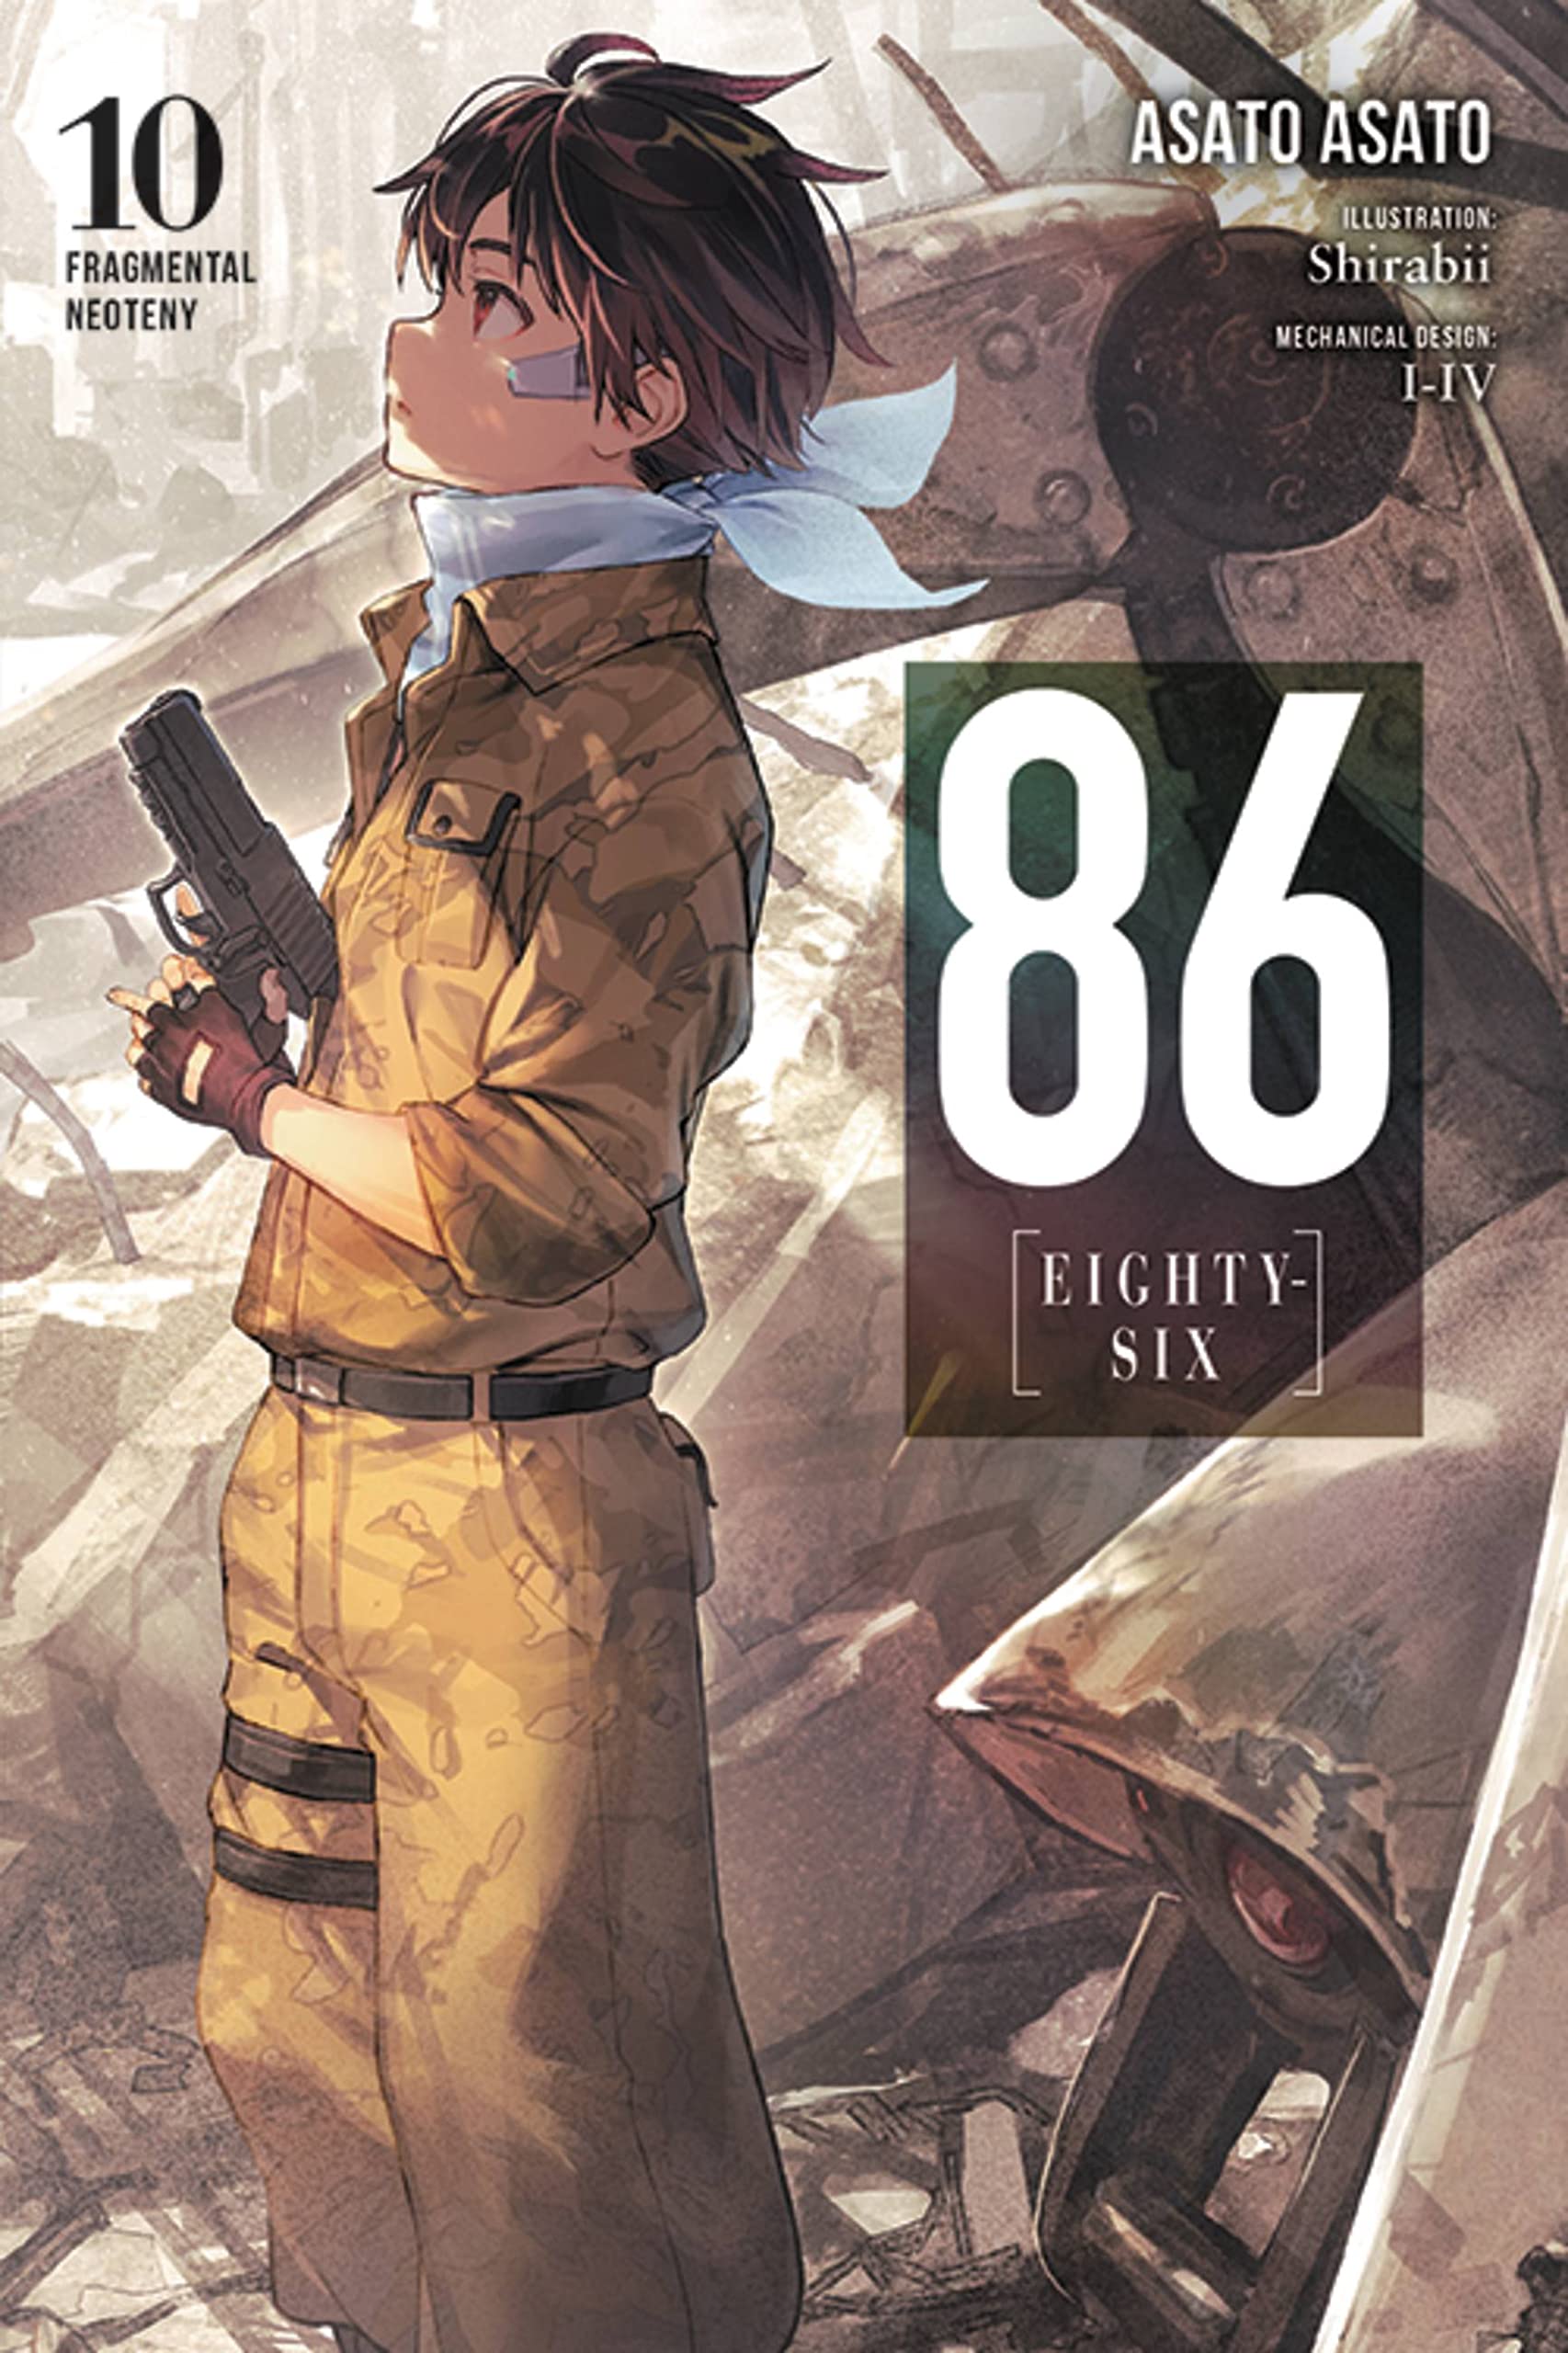 86--Eighty-Six Vol. 10 (Light Novel): Fragmental Neoteny